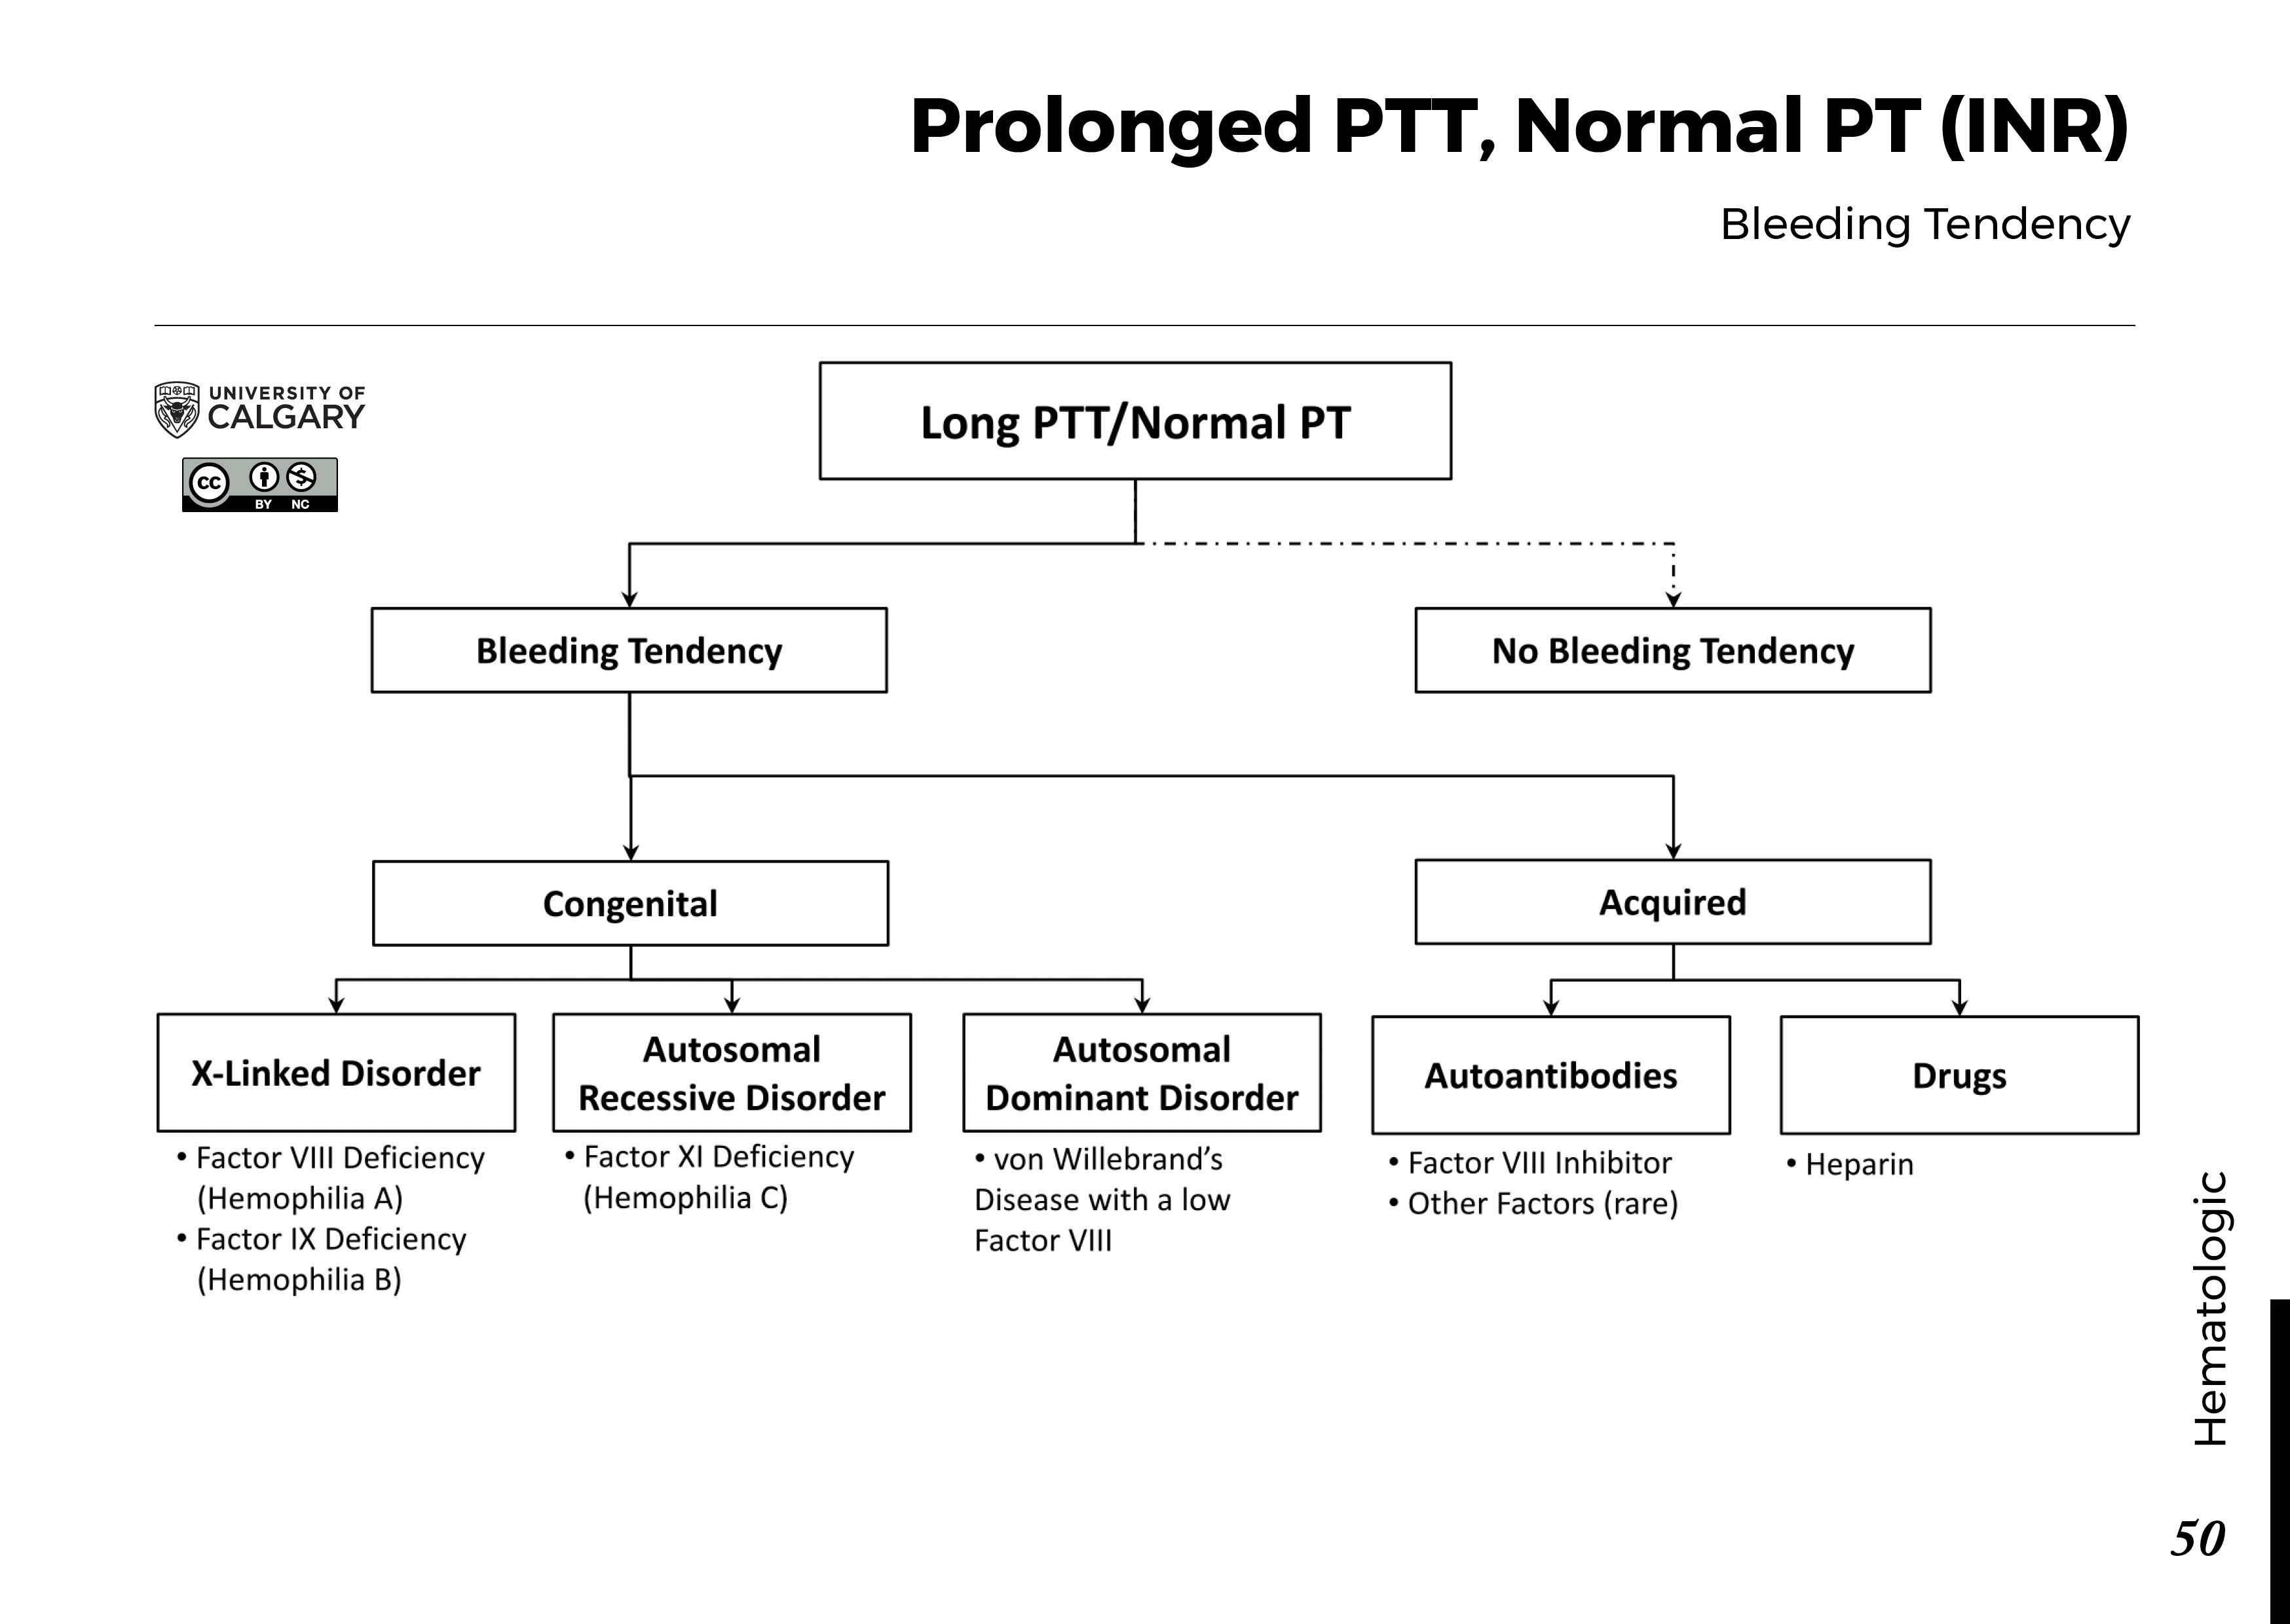 PROLONGED PTT, NORMAL PT (INR): Bleeding Tendency Scheme